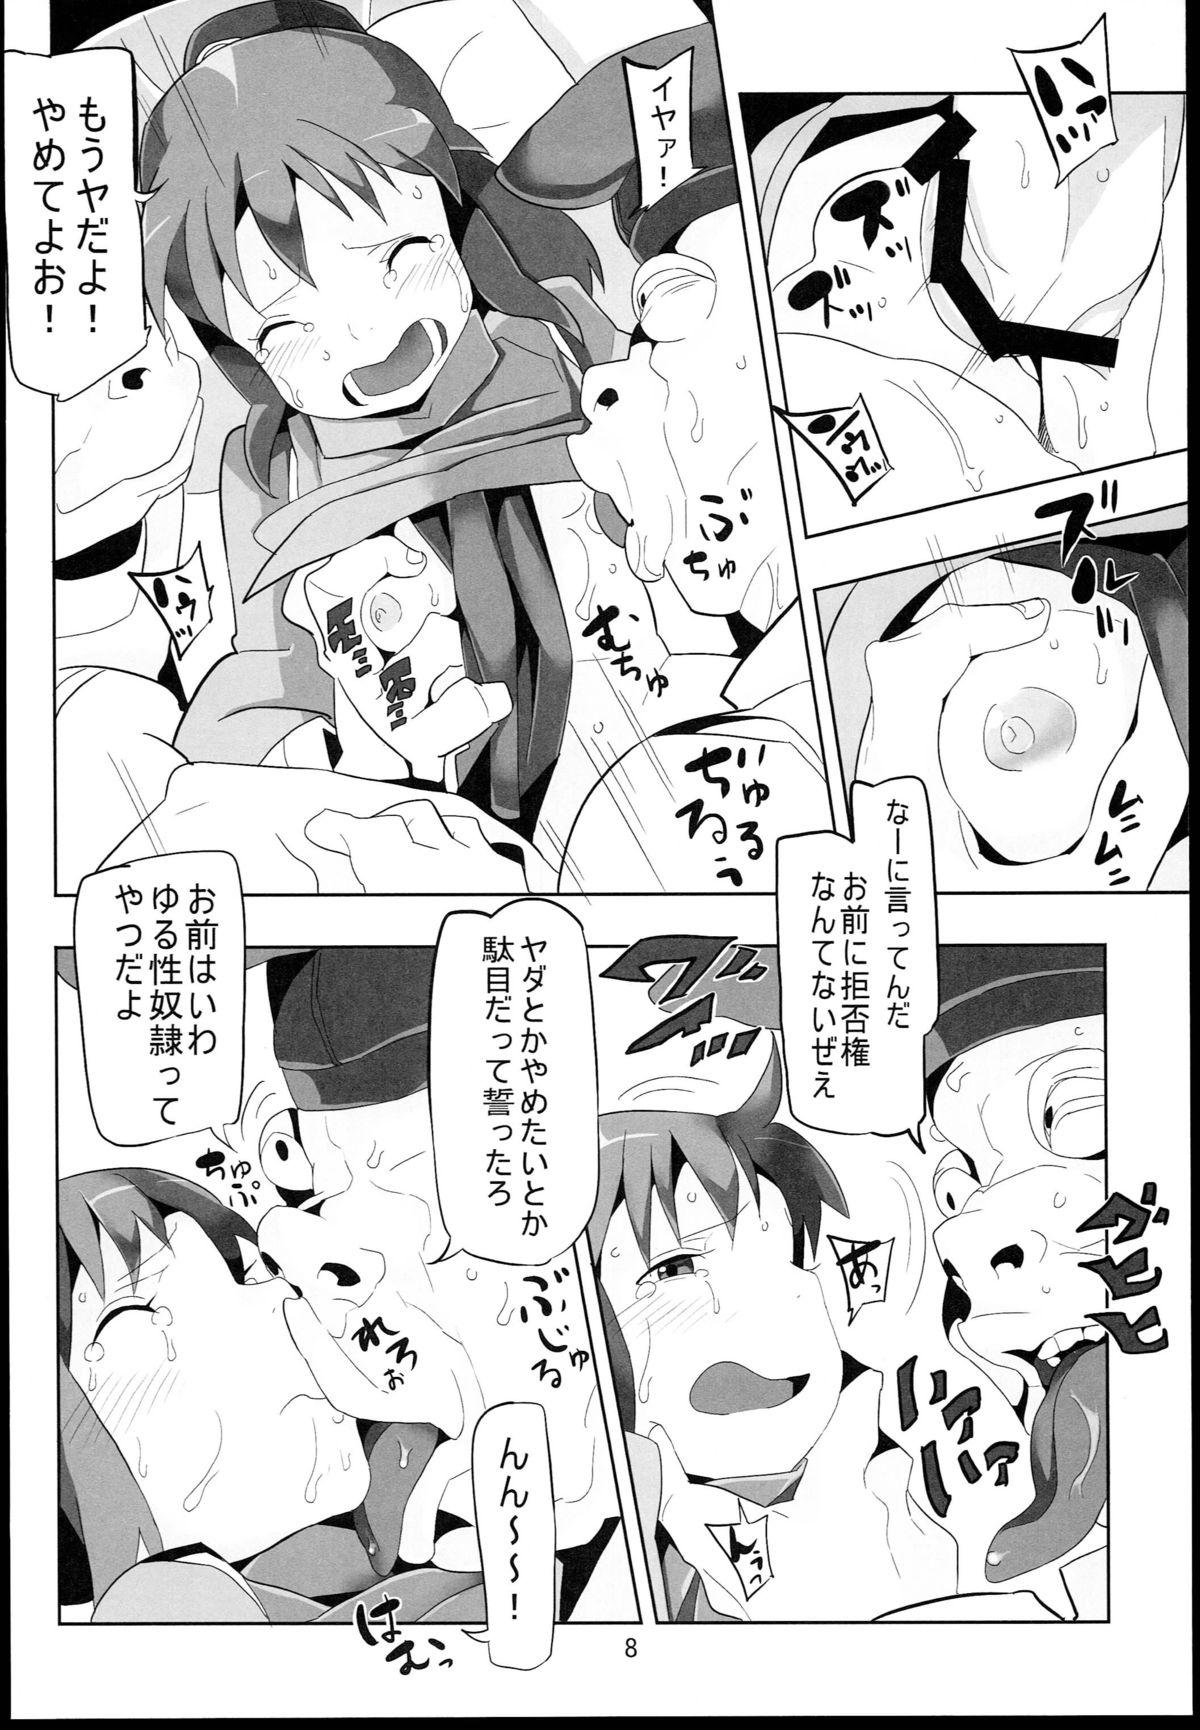 Perverted Sen to Chihiro to Ryoujoku no Yu-ya Isyukan Jigoku no Hibi - Spirited away Stepsiblings - Page 8